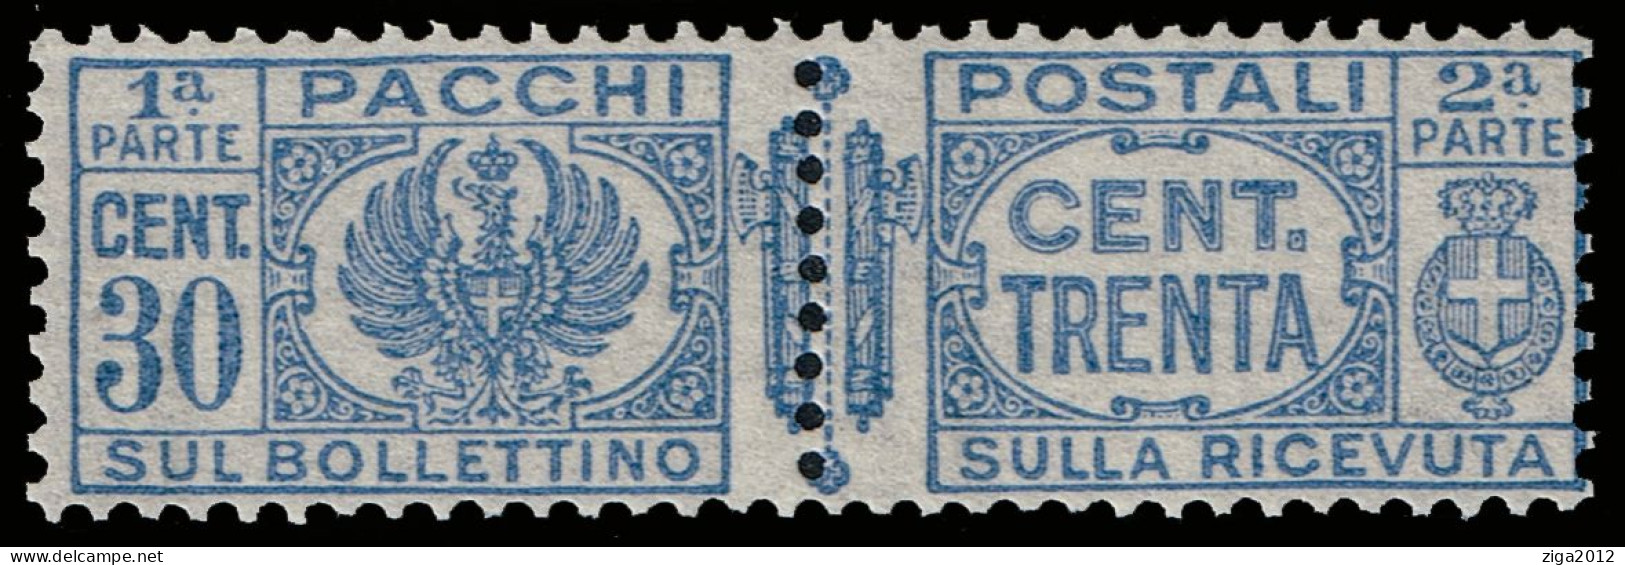 ITALY 1927/32 FRANCOBOLLO PACCHI POSTALI C.30 - NUOVO MNH - Pacchi Postali